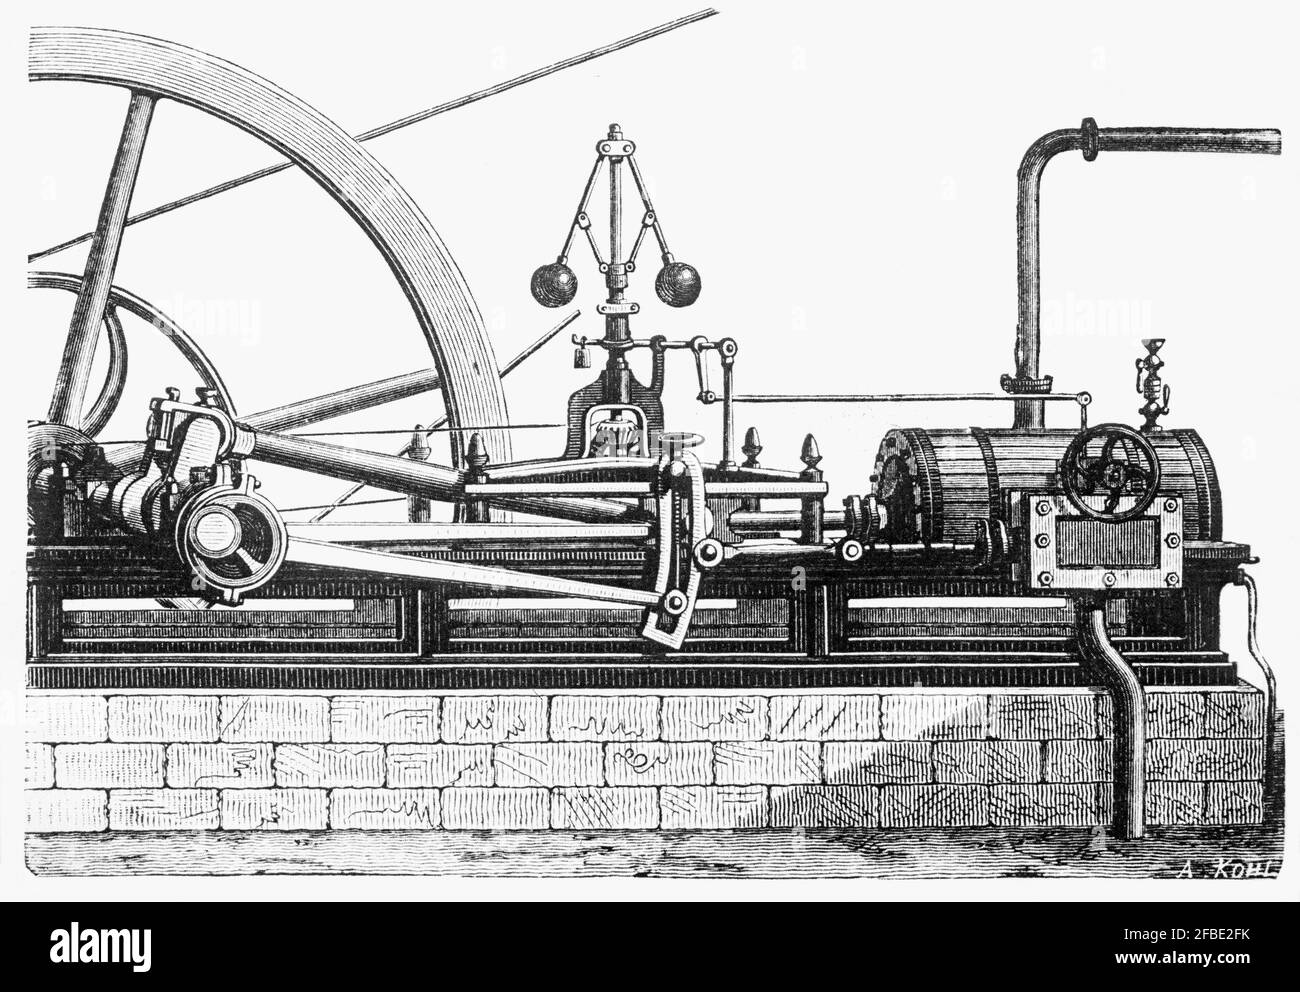 El motor de vapor Early una de las fuerzas de la Revolución Industrial. James Watt desarrolló el diseño esporádicamente de 1763 a 1775 con el apoyo de Matthew Boulton.